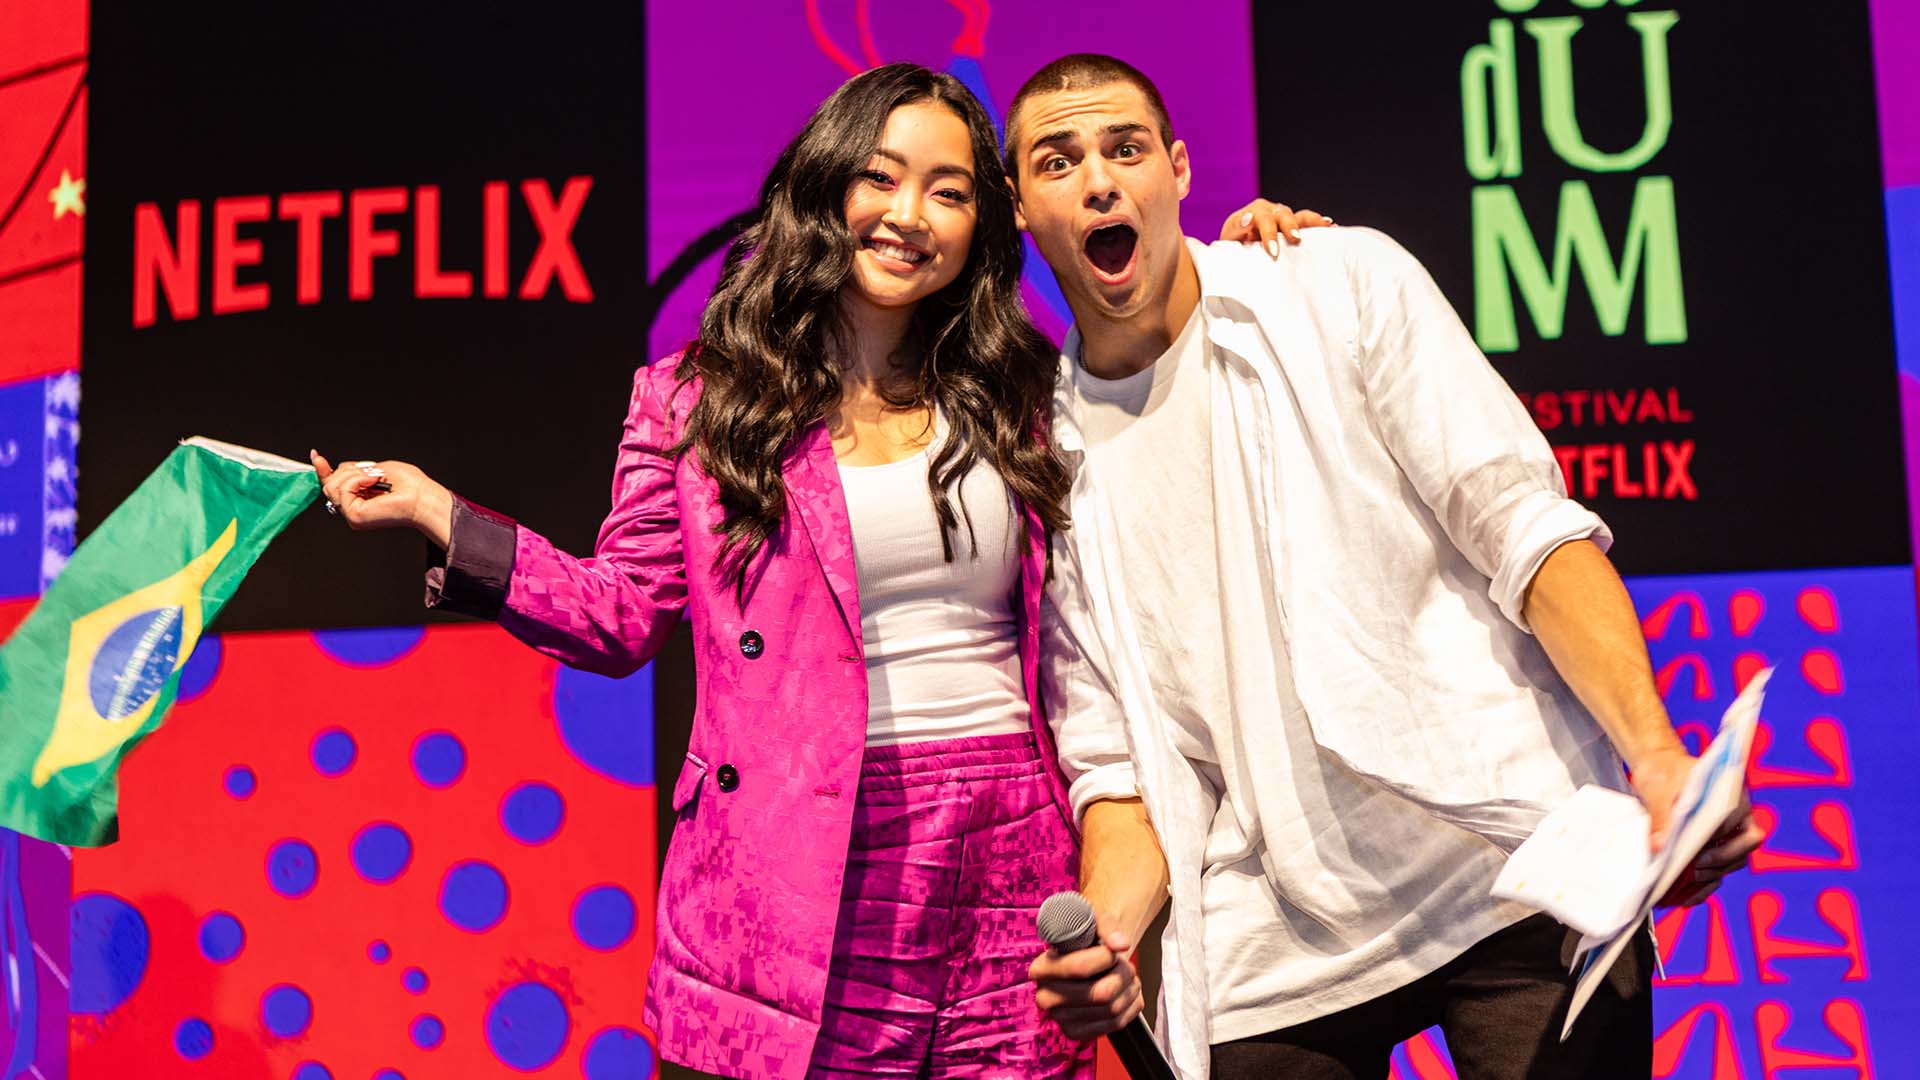 TUDUM | Netflix surpreende o público com Festival!